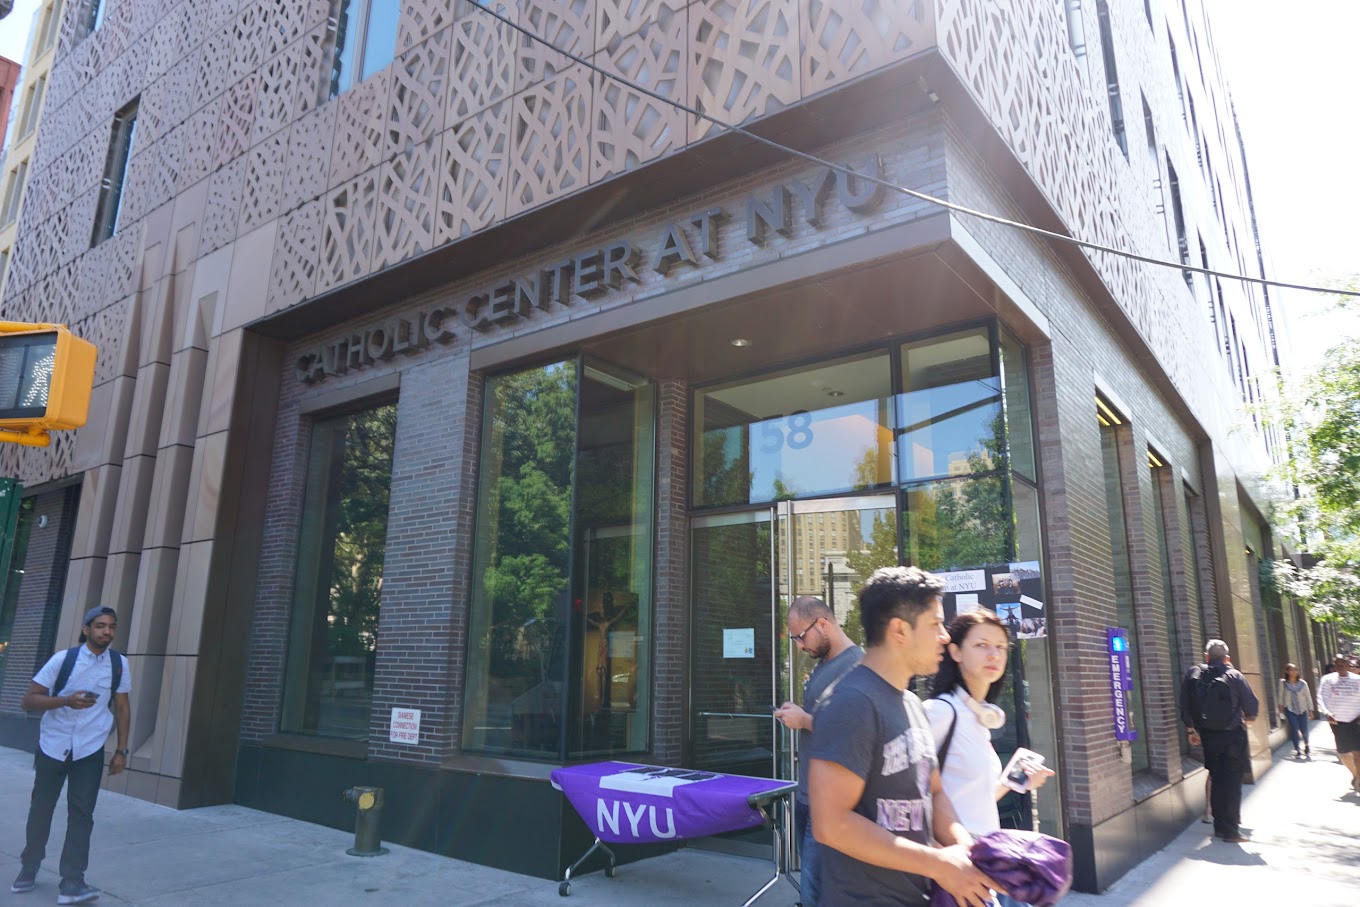 The outside of the Catholic Center at NYU.